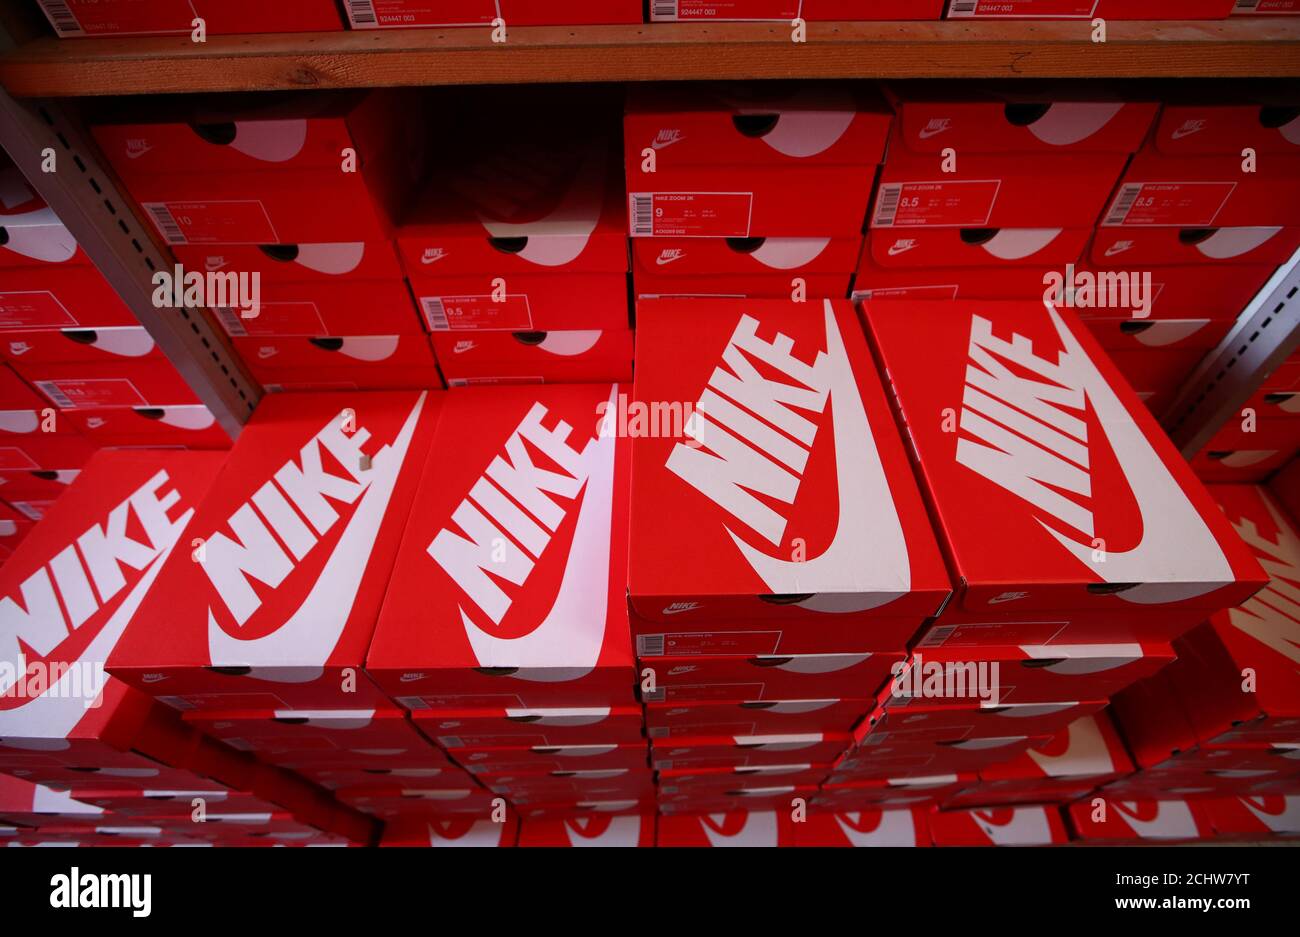 Las cajas de zapatos Nike se muestran en el almacén de la tienda local calzado 'Pomp Up' en Bussigny cerca Lausana, Suiza 24 Aprill, 2019. REUTERS/Denis Balibouse Fotografía de